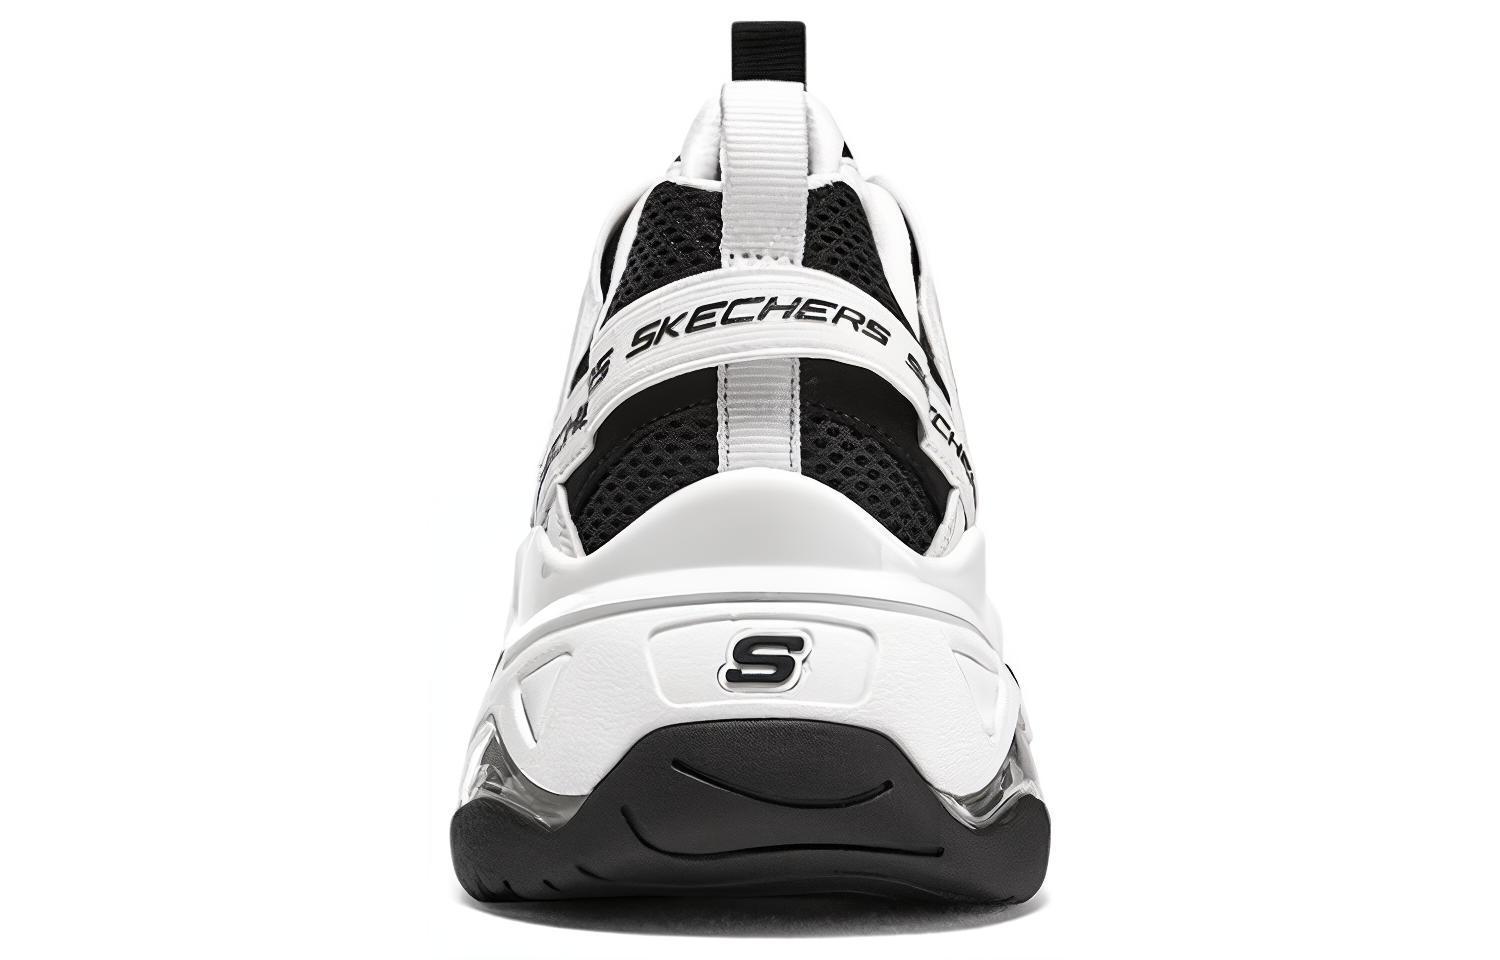 Skechers D'LITES 3.0 Air